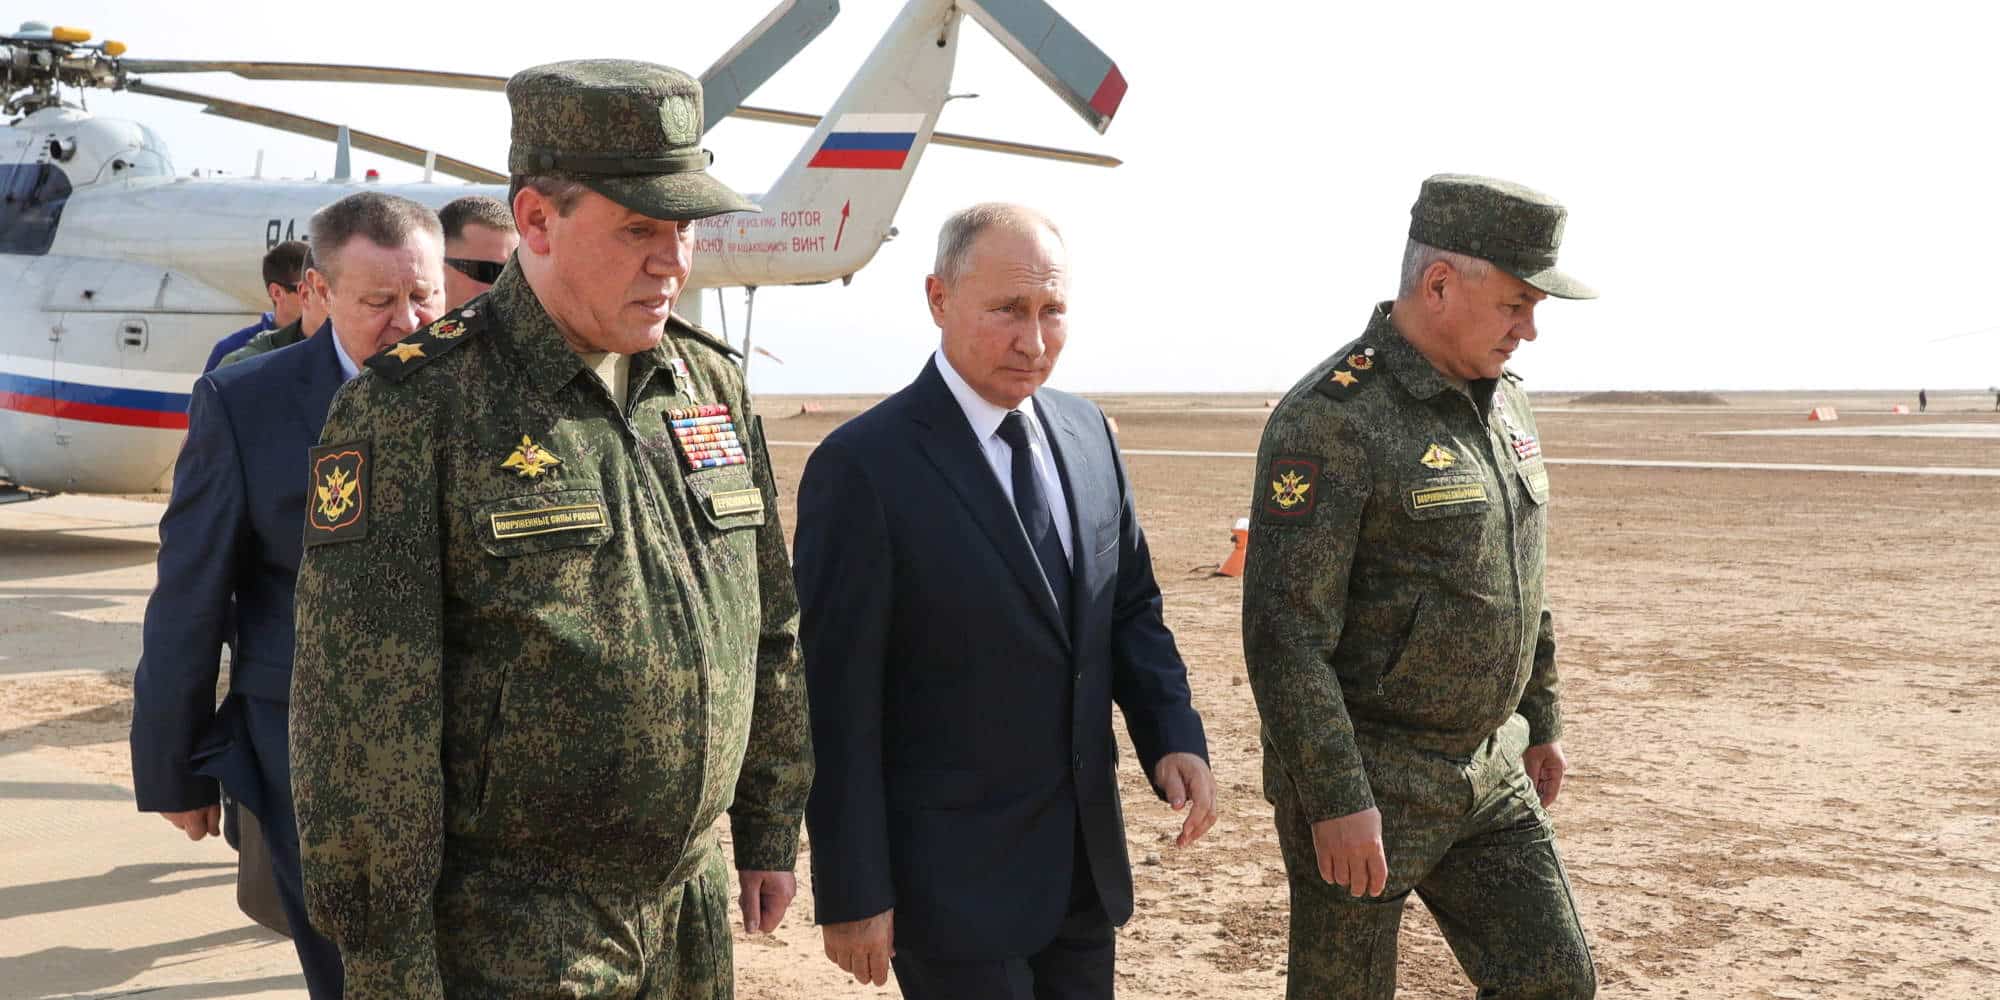 Ο Βλαντιμίρ Πούτιν με τους πιο κοντινούς του συμβούλους σε θέματα Άμυνας, τον Υπουργό Άμυνας Σοϊγκού και τον αρχηγό του επιτελείου στρατού, Γκεράσιμοφ